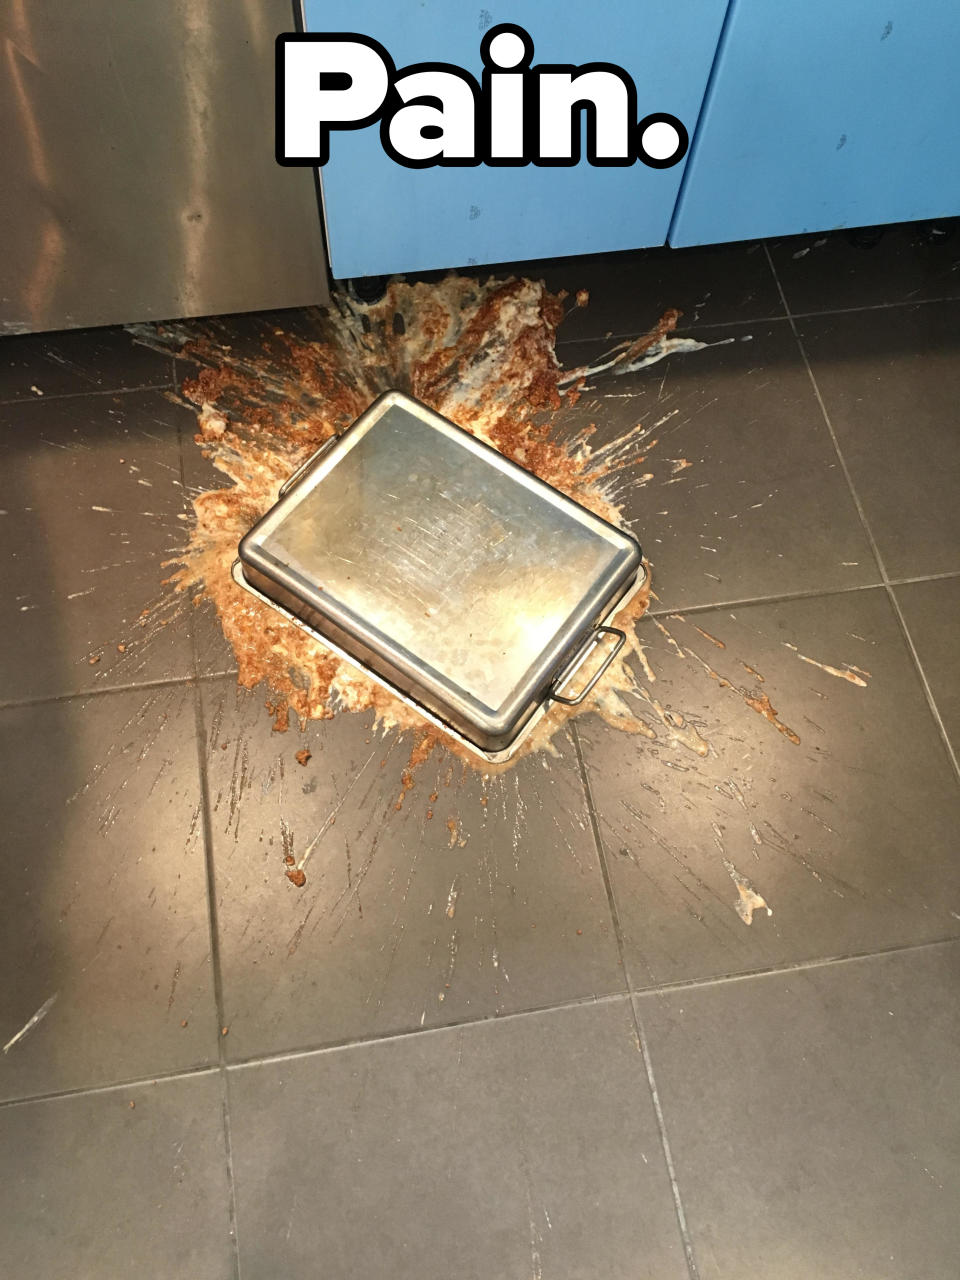 "Pain": A pan of lasagna fallen on the kitchen floor